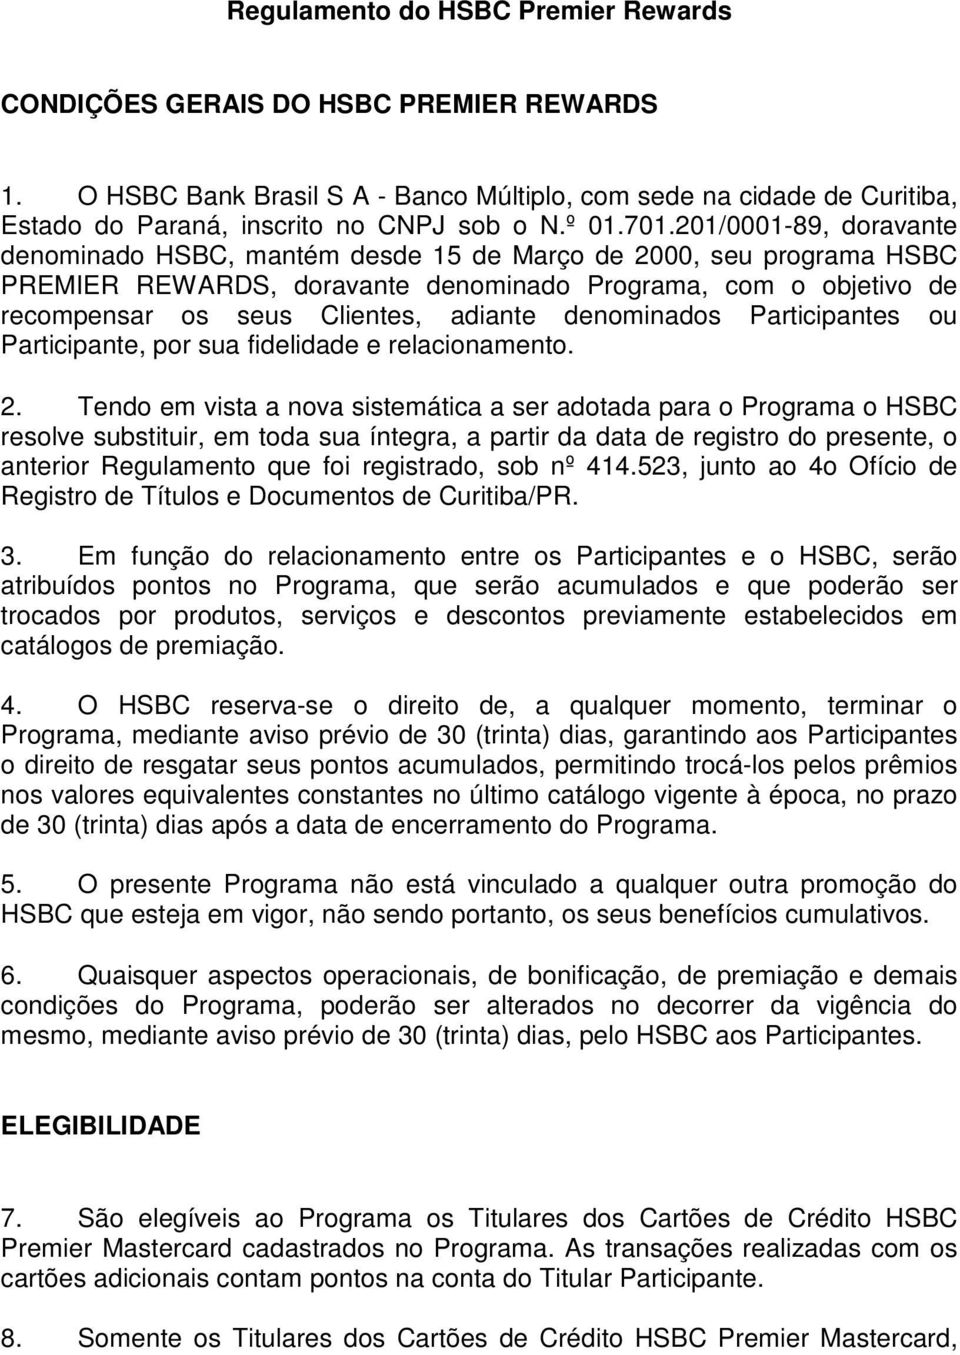 201/0001-89, doravante denominado HSBC, mantém desde 15 de Março de 2000, seu programa HSBC PREMIER REWARDS, doravante denominado Programa, com o objetivo de recompensar os seus Clientes, adiante